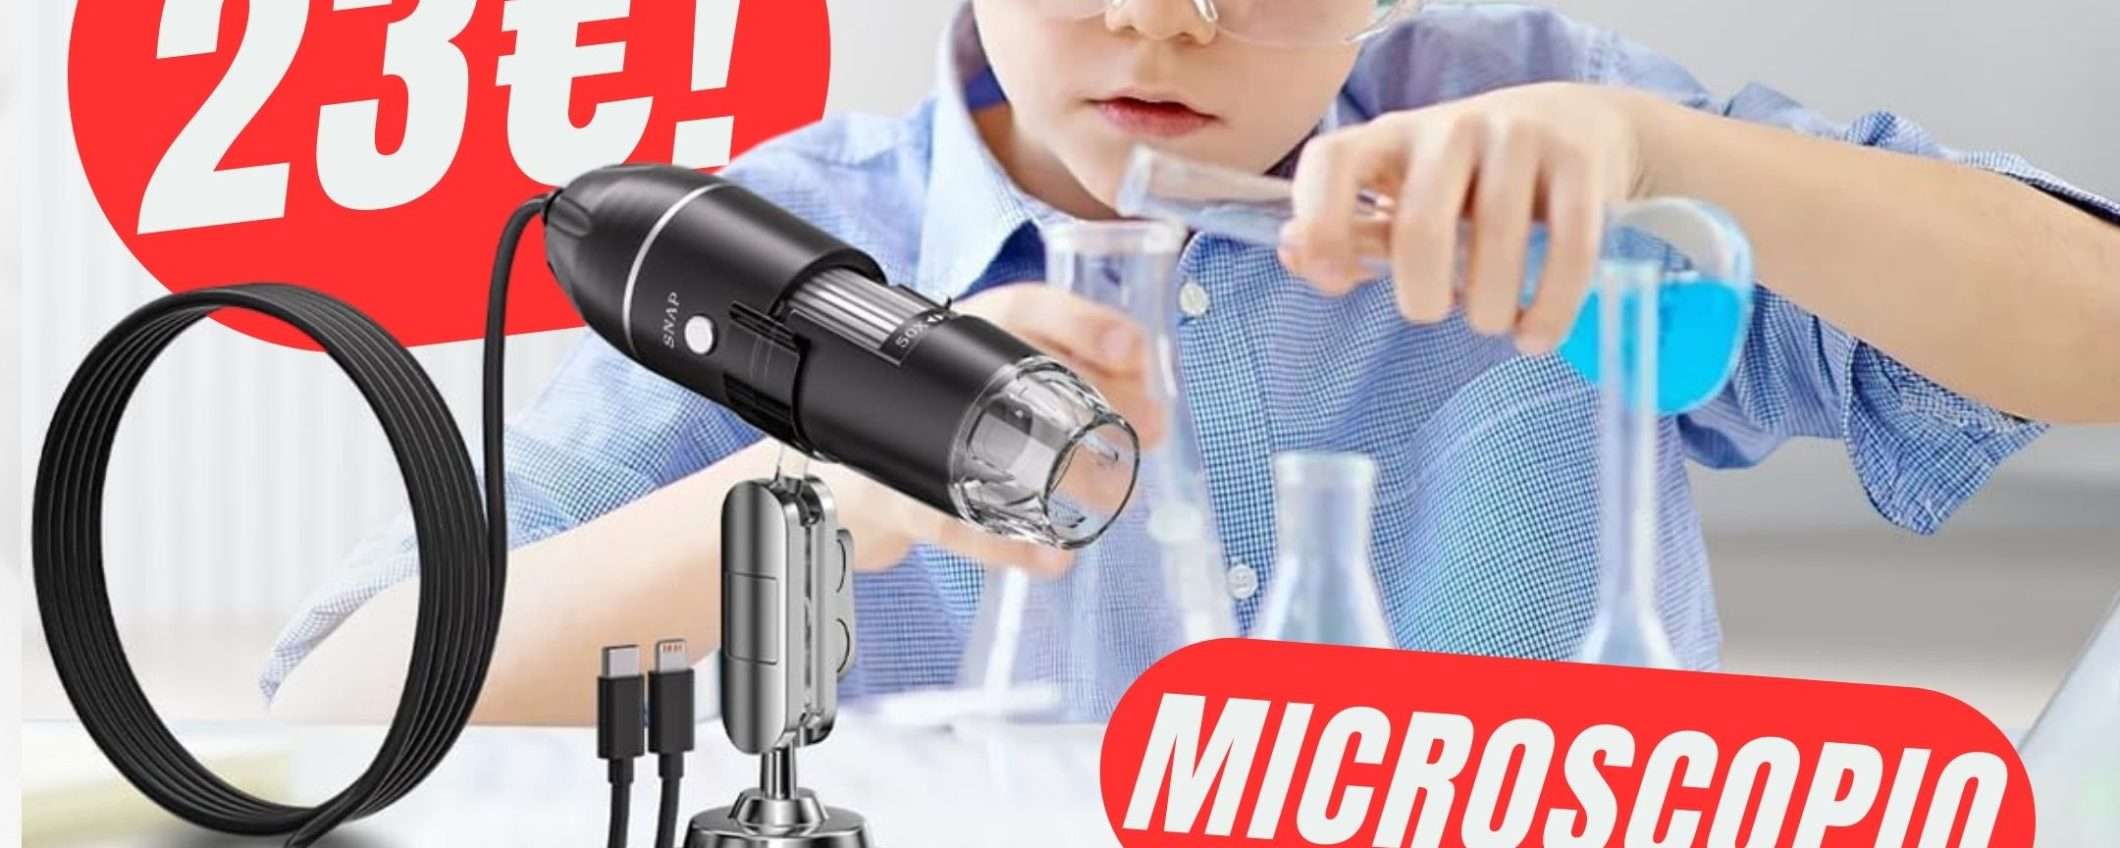 Con questo Microscopio diventerai uno scienziato con soli 23€!